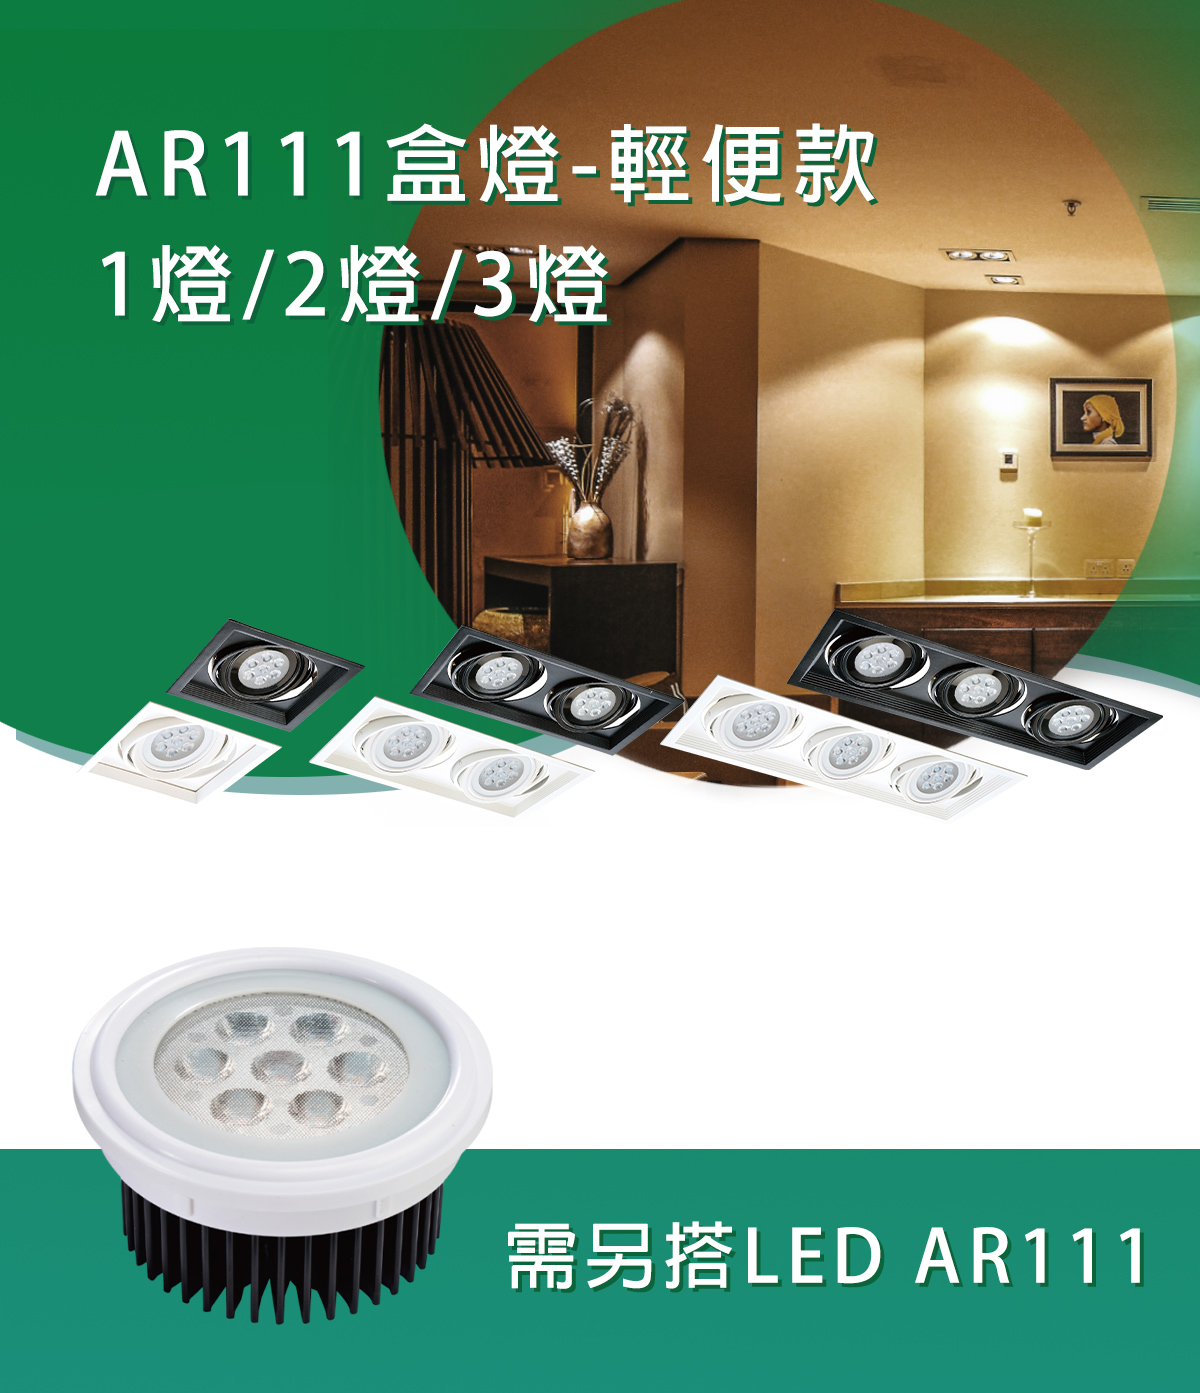 【KAO'S】AR111 輕便型盒燈 1燈 2燈 3燈 需搭配AR111燈泡(另計)